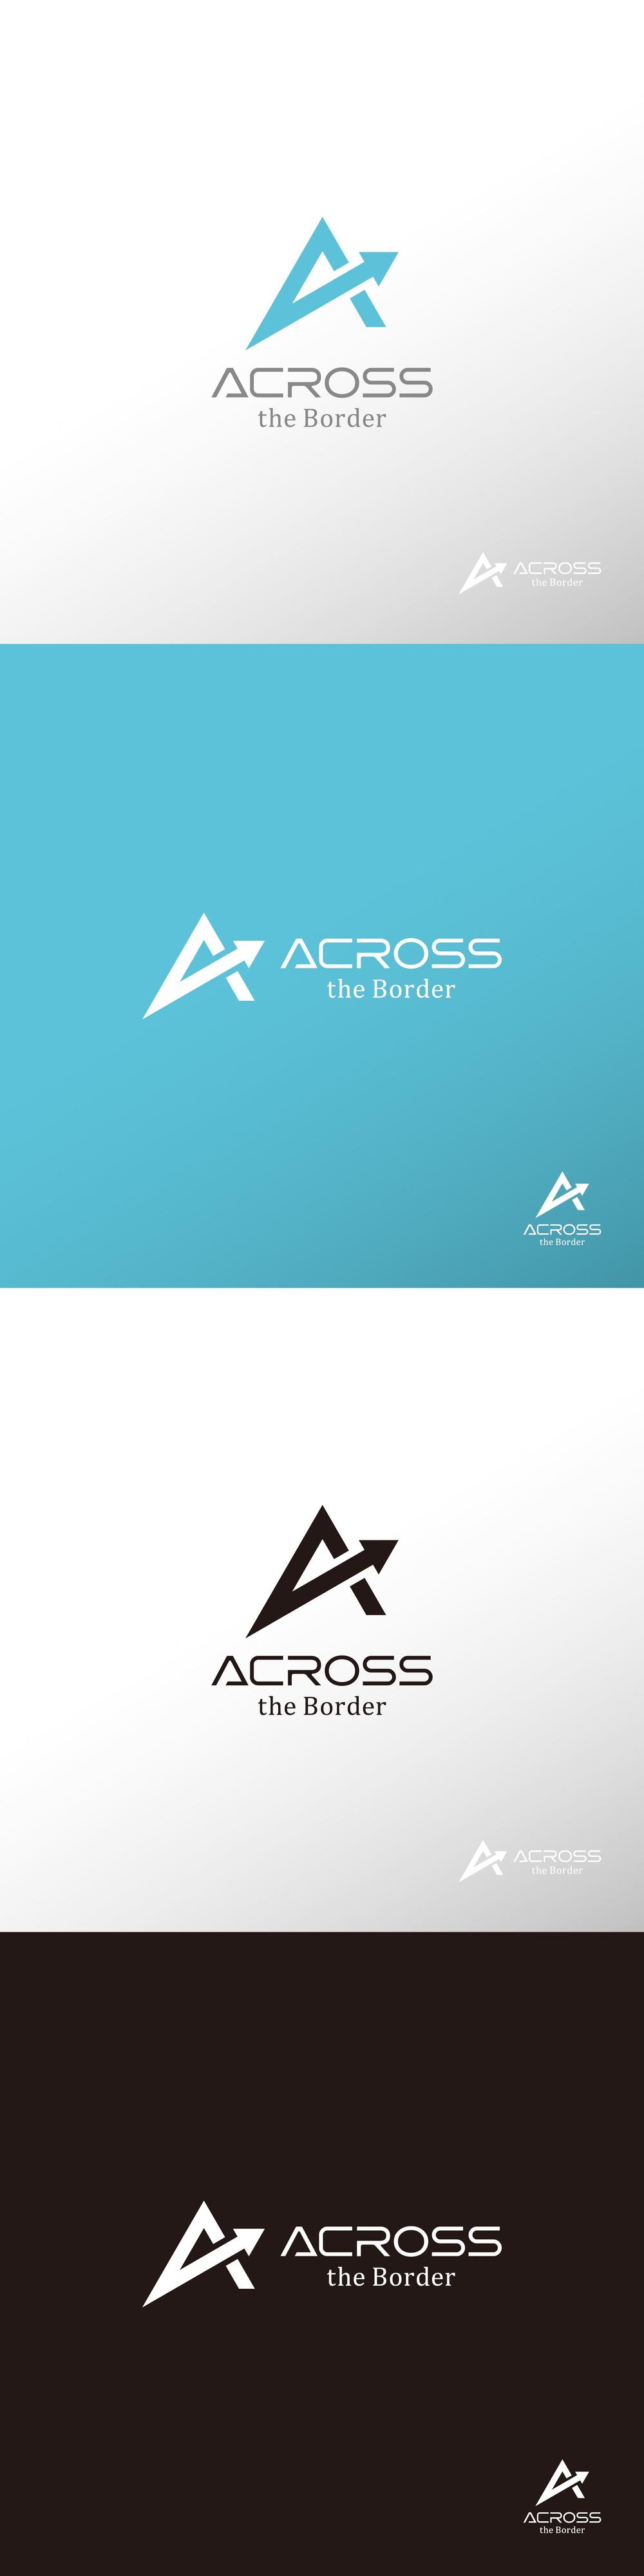 ファンド_ACROSS the Border_ロゴA1.jpg